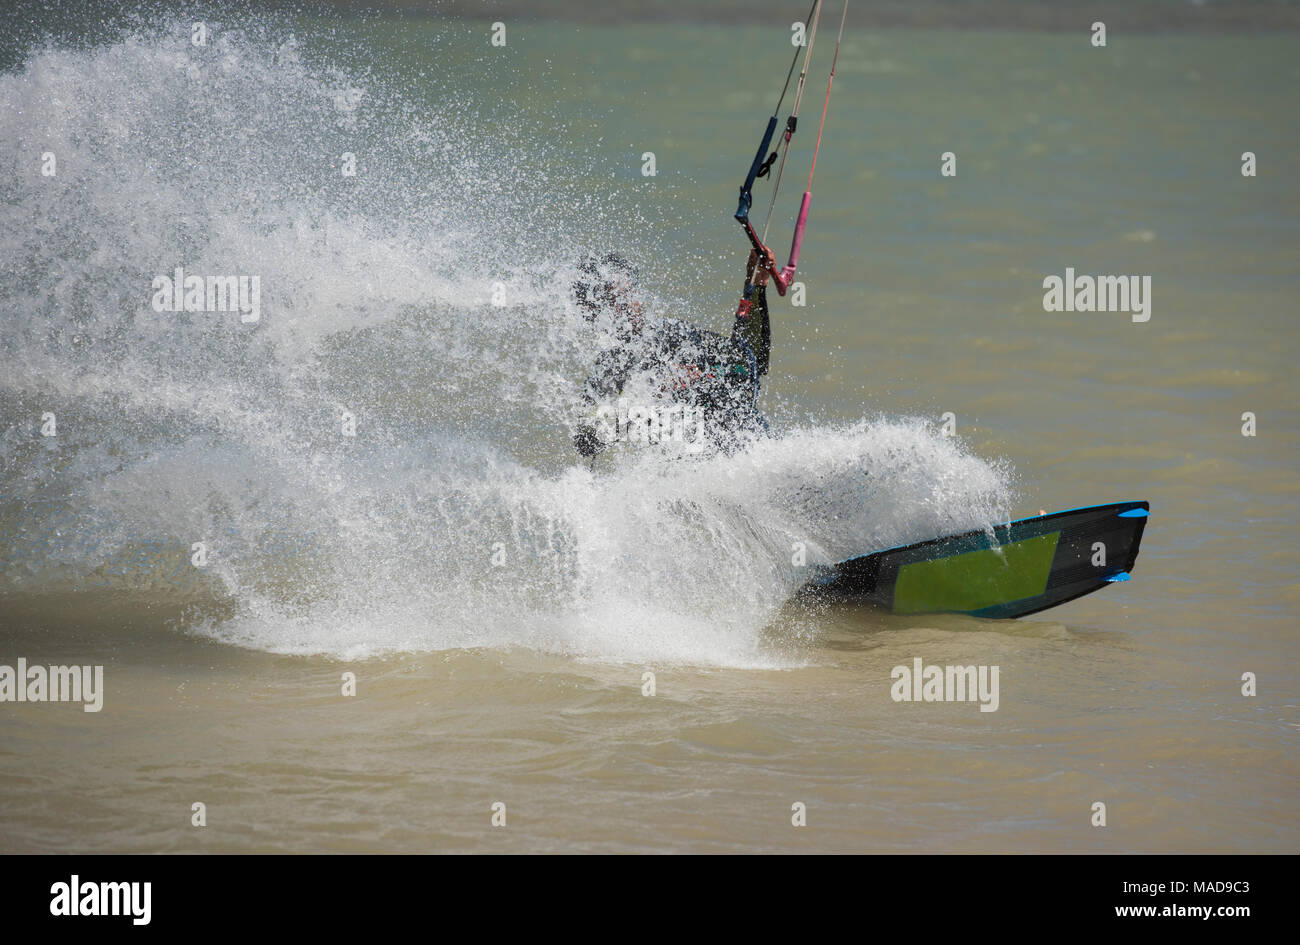 Sport ricreativo kitesurfer navigare sulla laguna in mare tropcial con wake splash Foto Stock